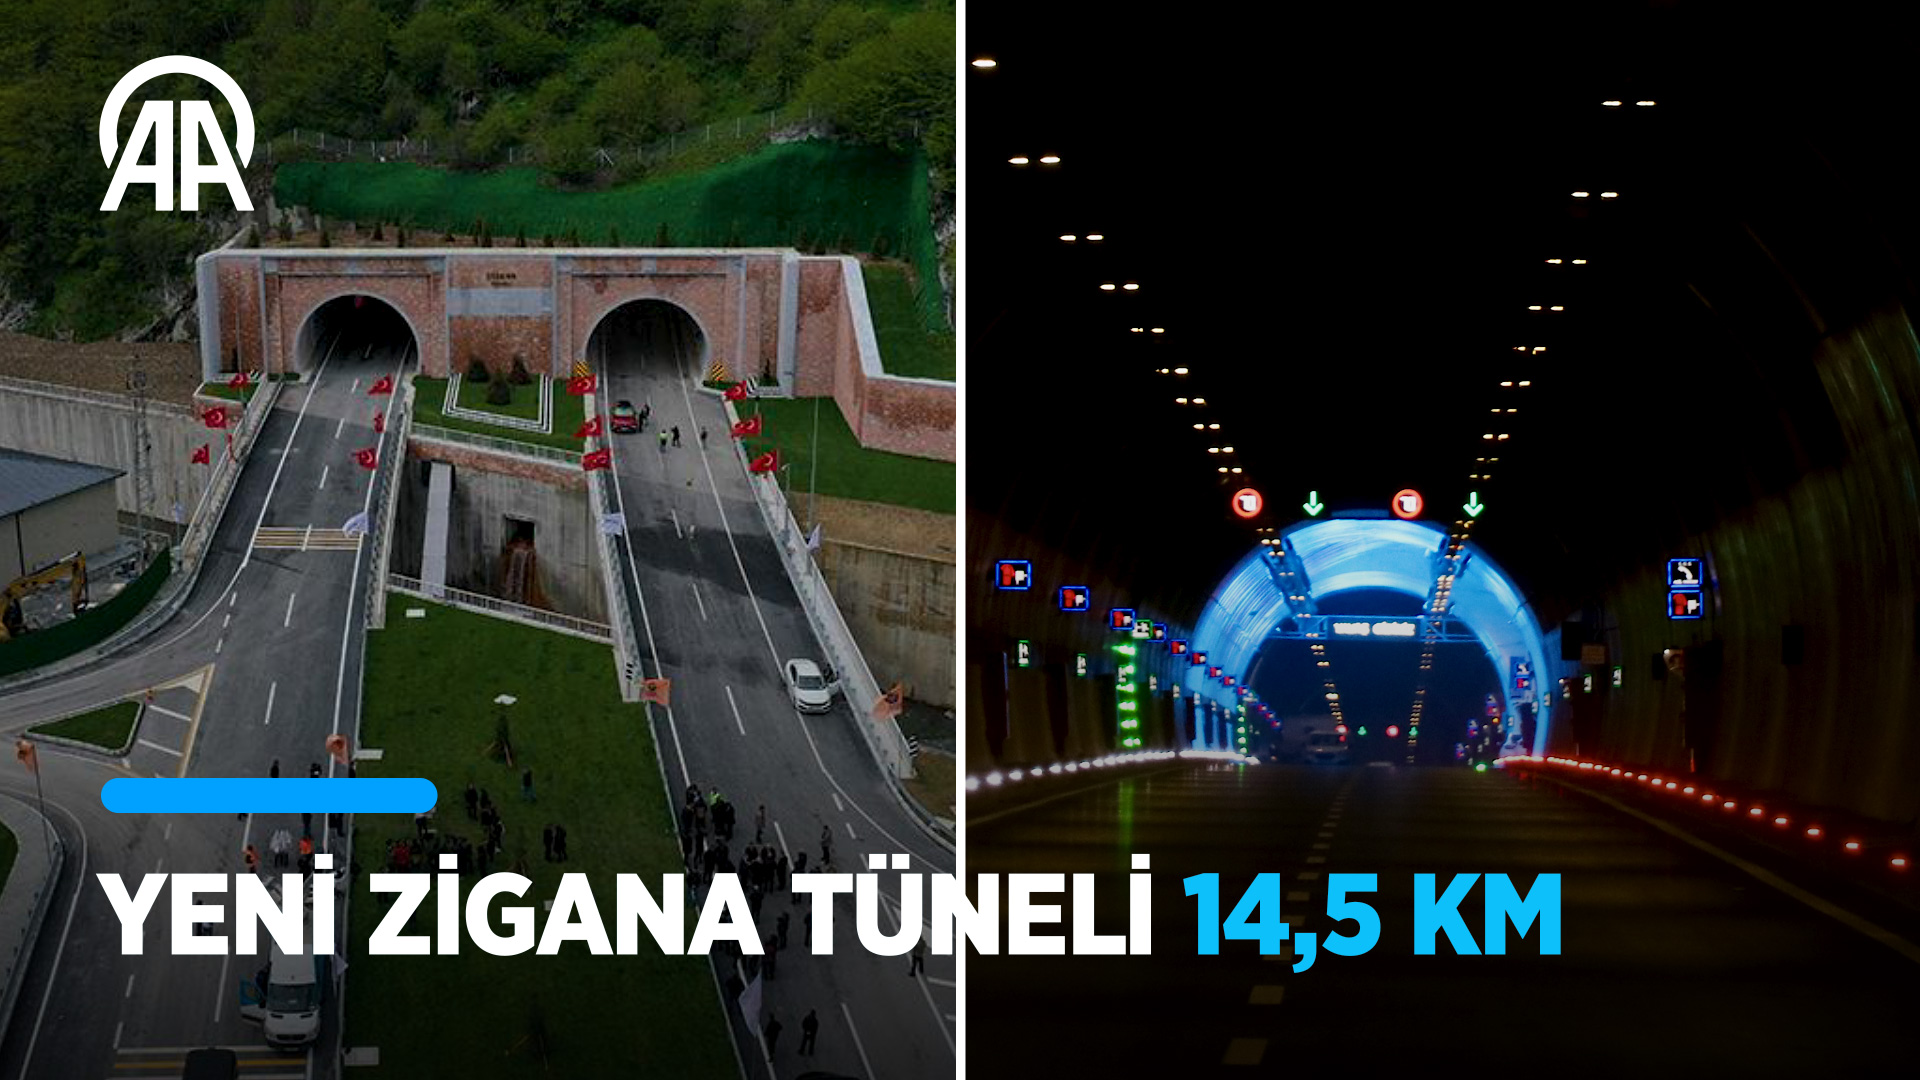 Yeni Zigana Tüneli 14,5 Km